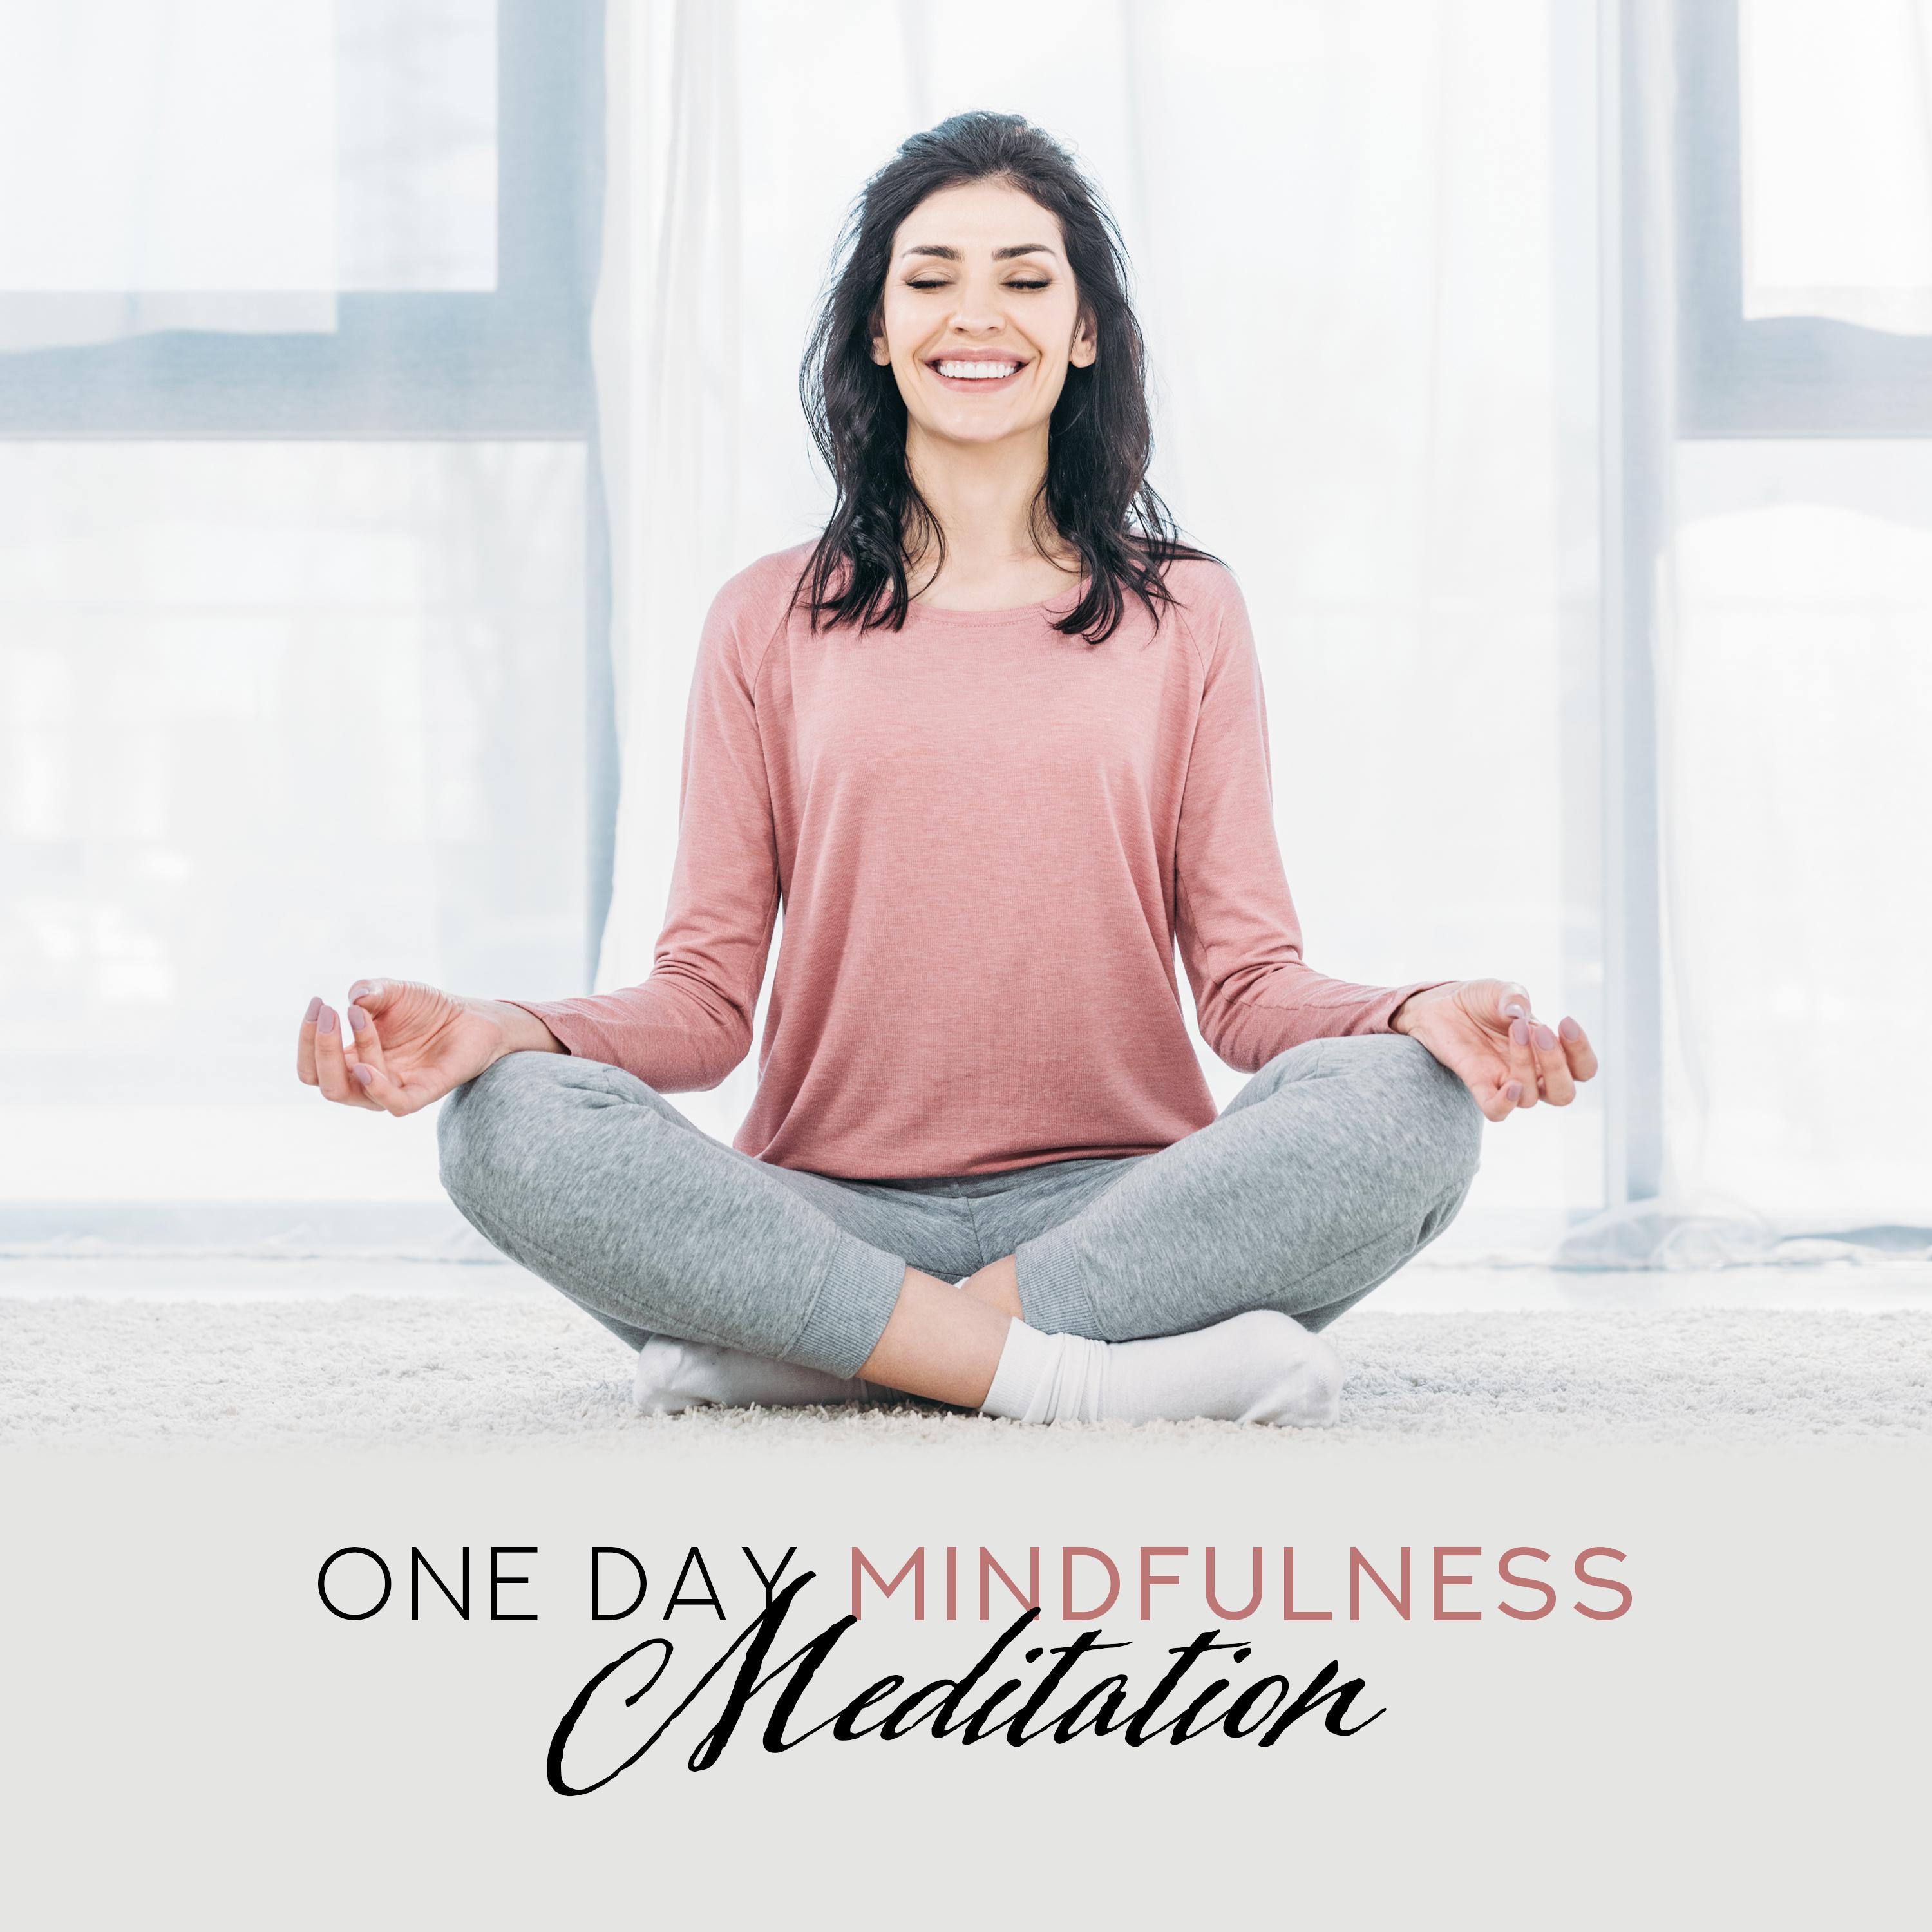 One Day Meditation